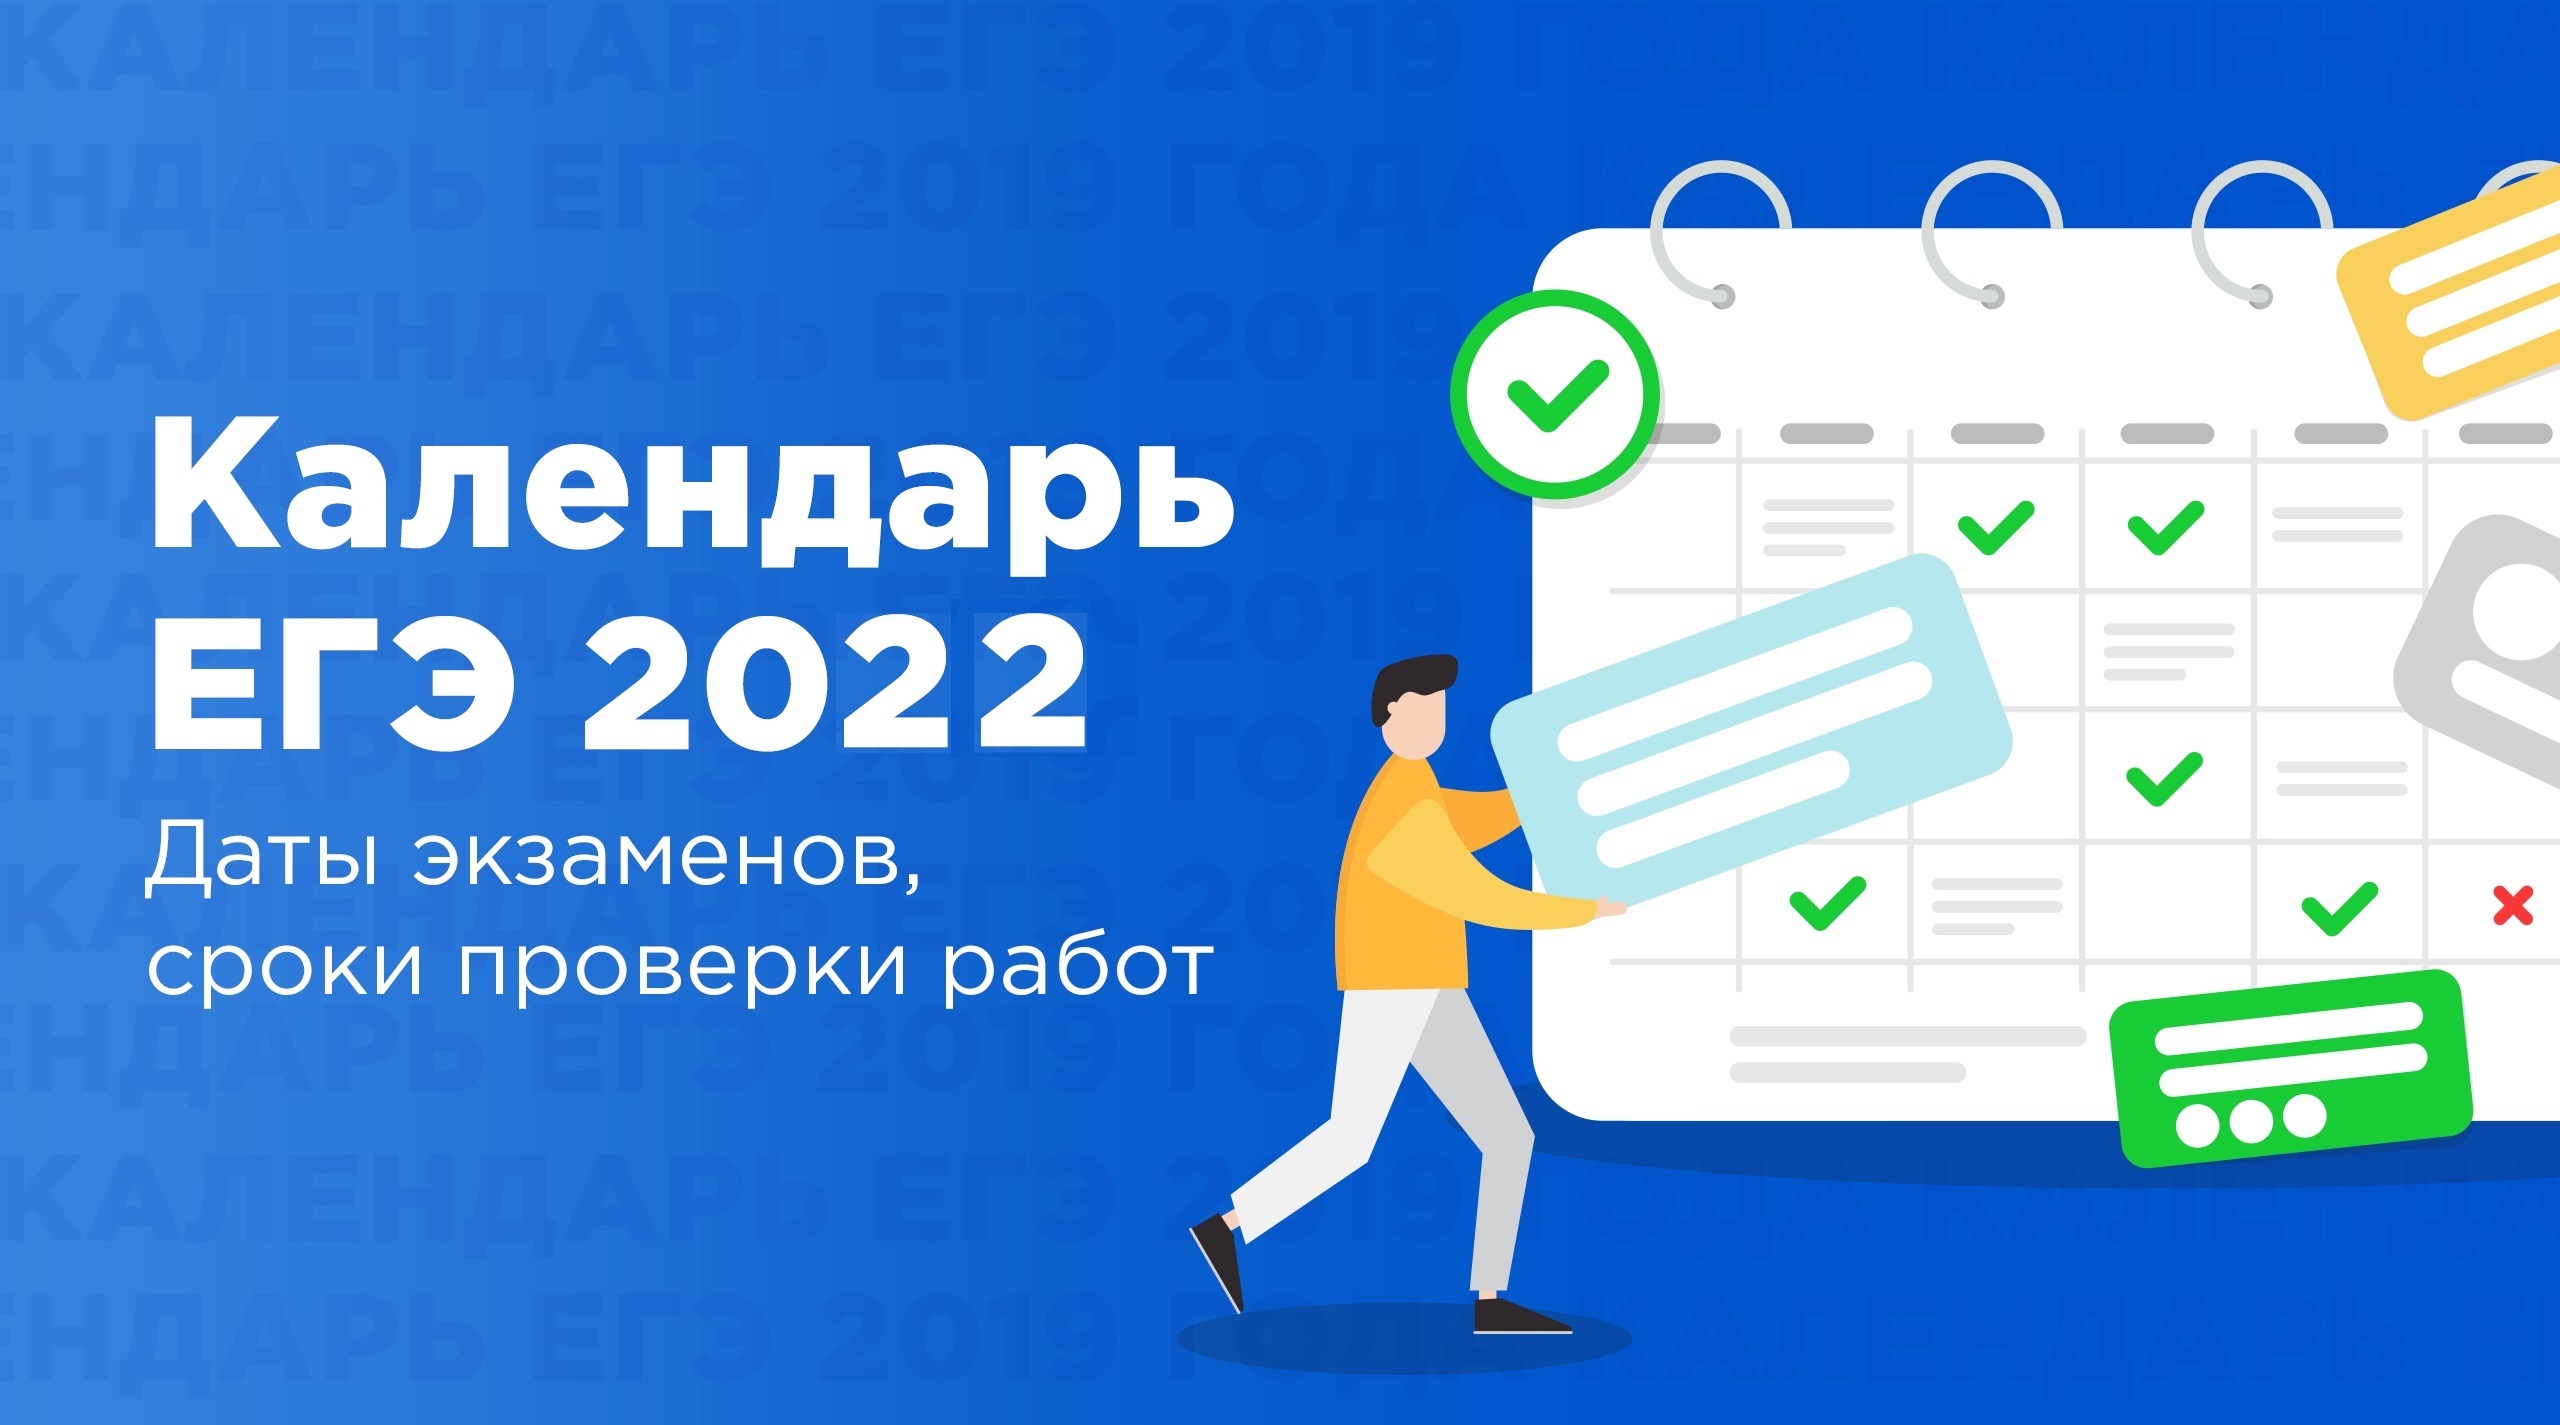 Календарь ЕГЭ-2022: даты экзаменов, сроки проверки работ